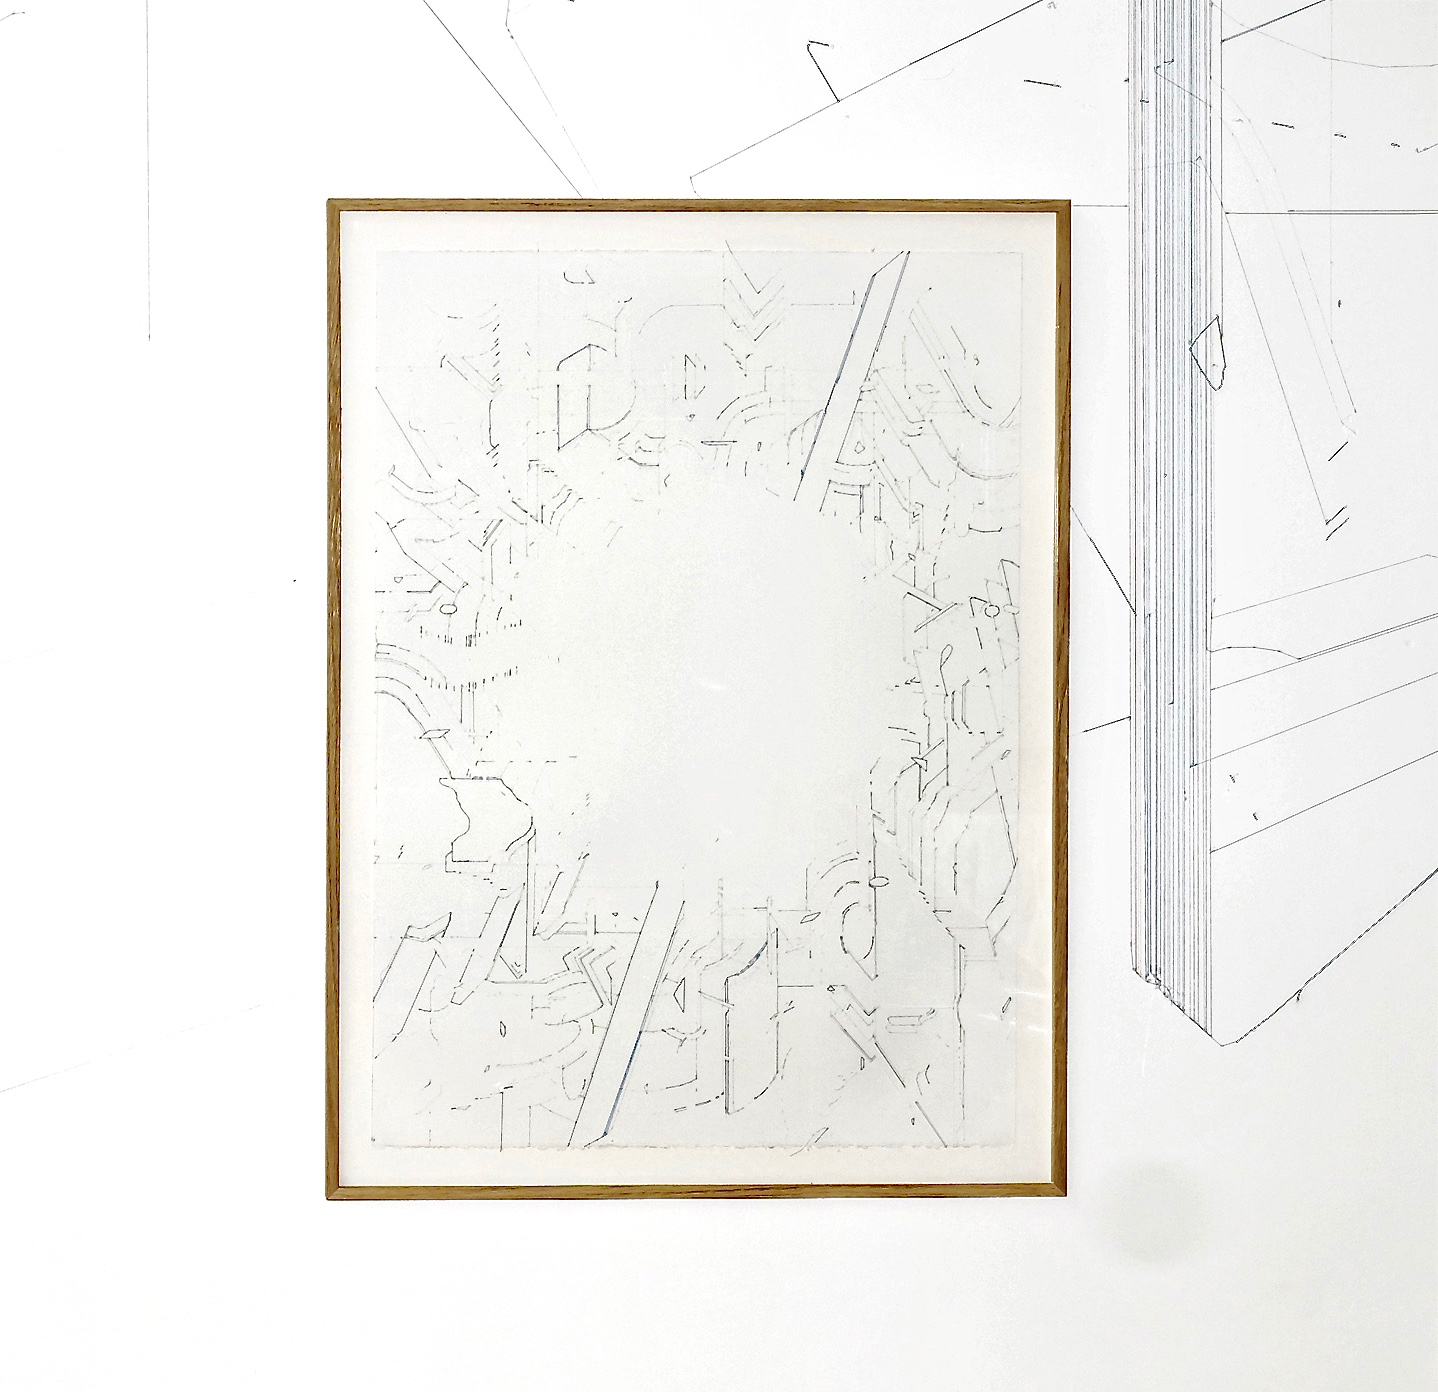   Keita Mori,  Bug Report , 2016. Fil de coton et fil de soie sur papier, 76 cm x 56 cm  